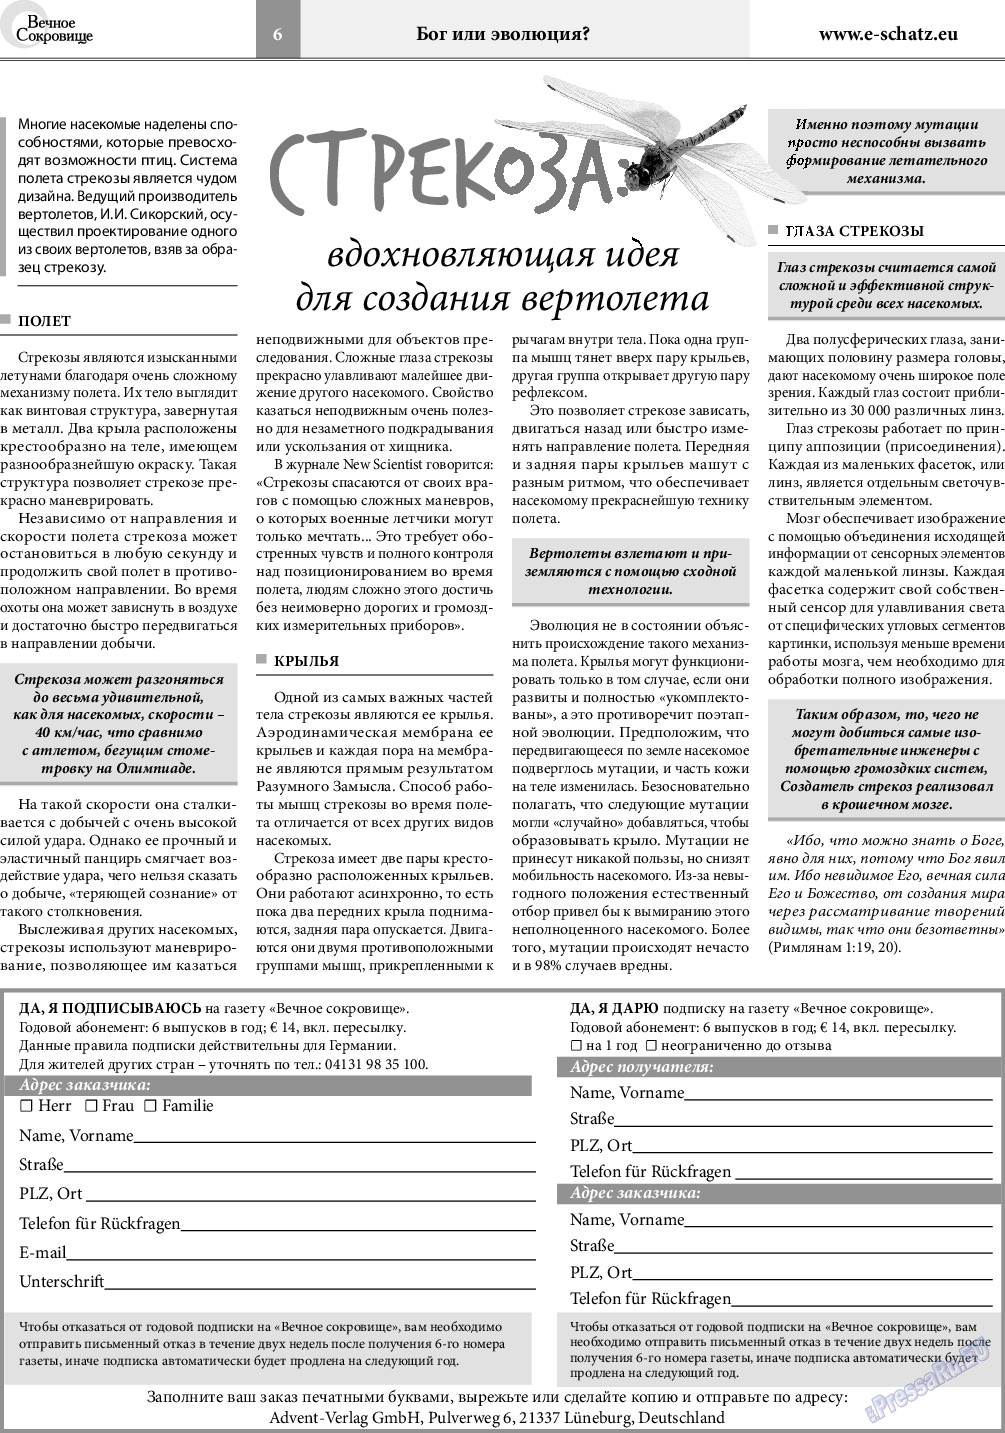 Вечное сокровище, газета. 2019 №3 стр.6